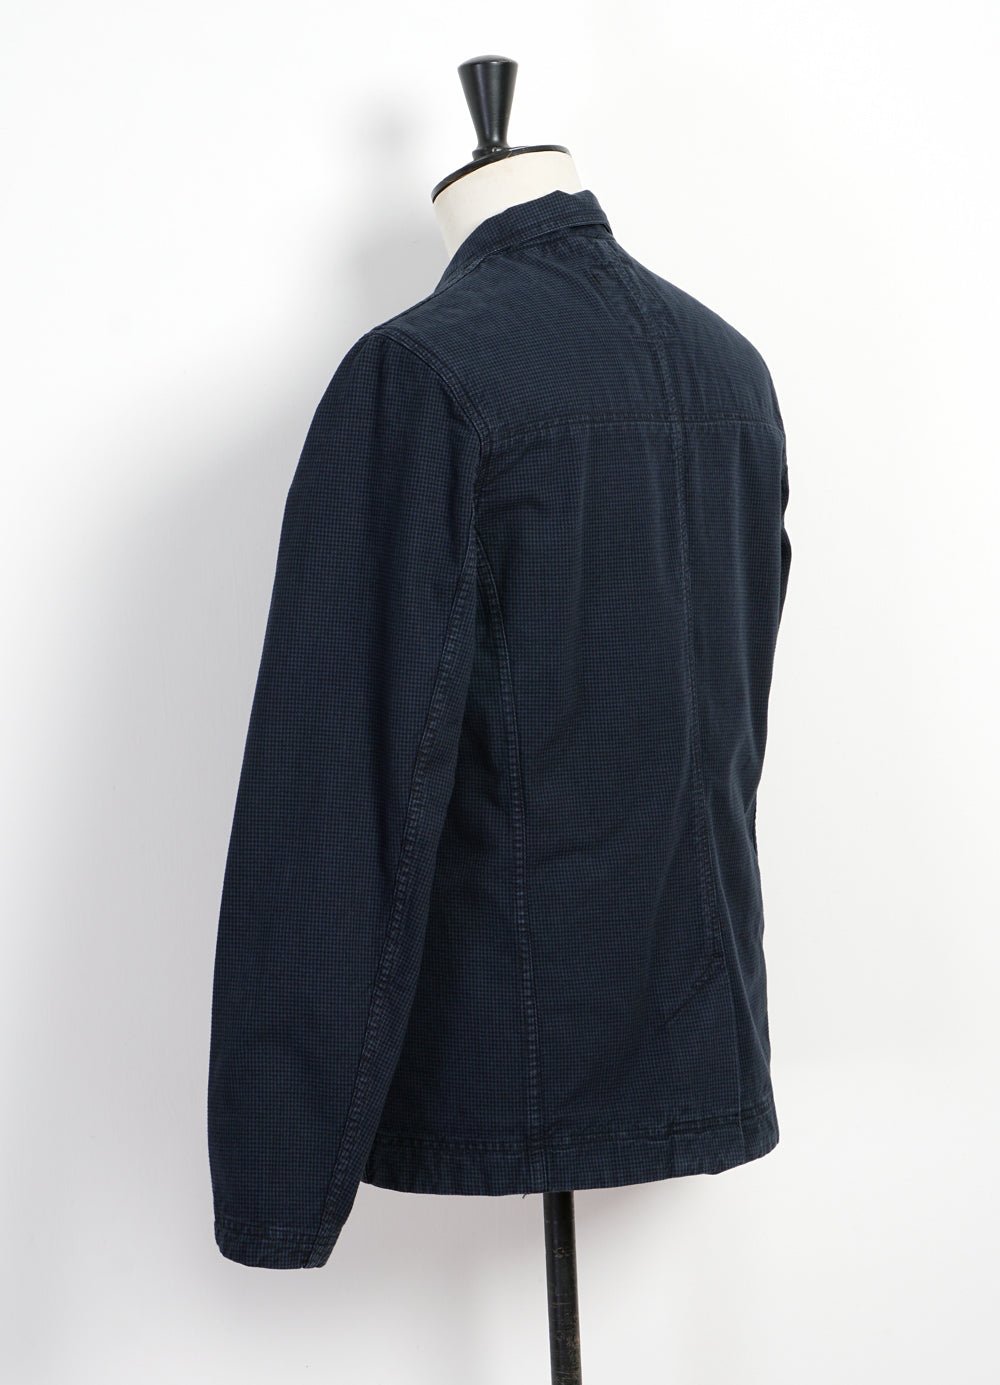 HANSEN GARMENTS - NICOLAI | Informal 4-button Blazer | Black Navy - HANSEN Garments